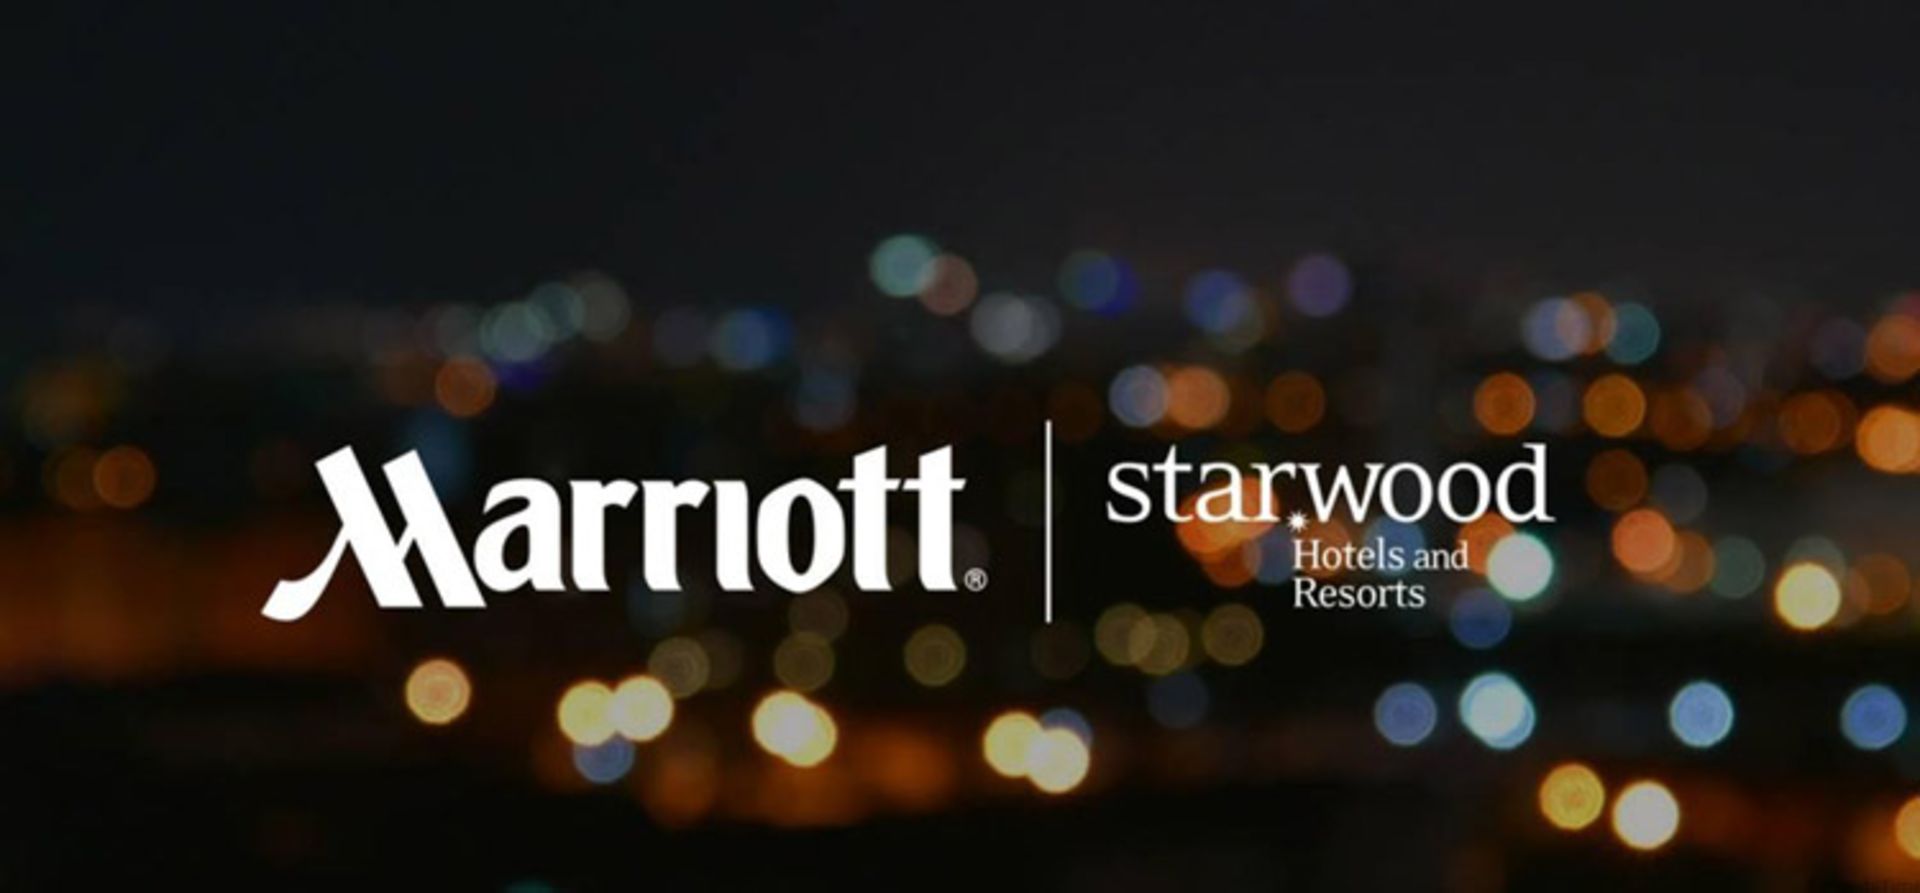 رسوایی مرییات استاروود / Merriot's Starwood Scandal